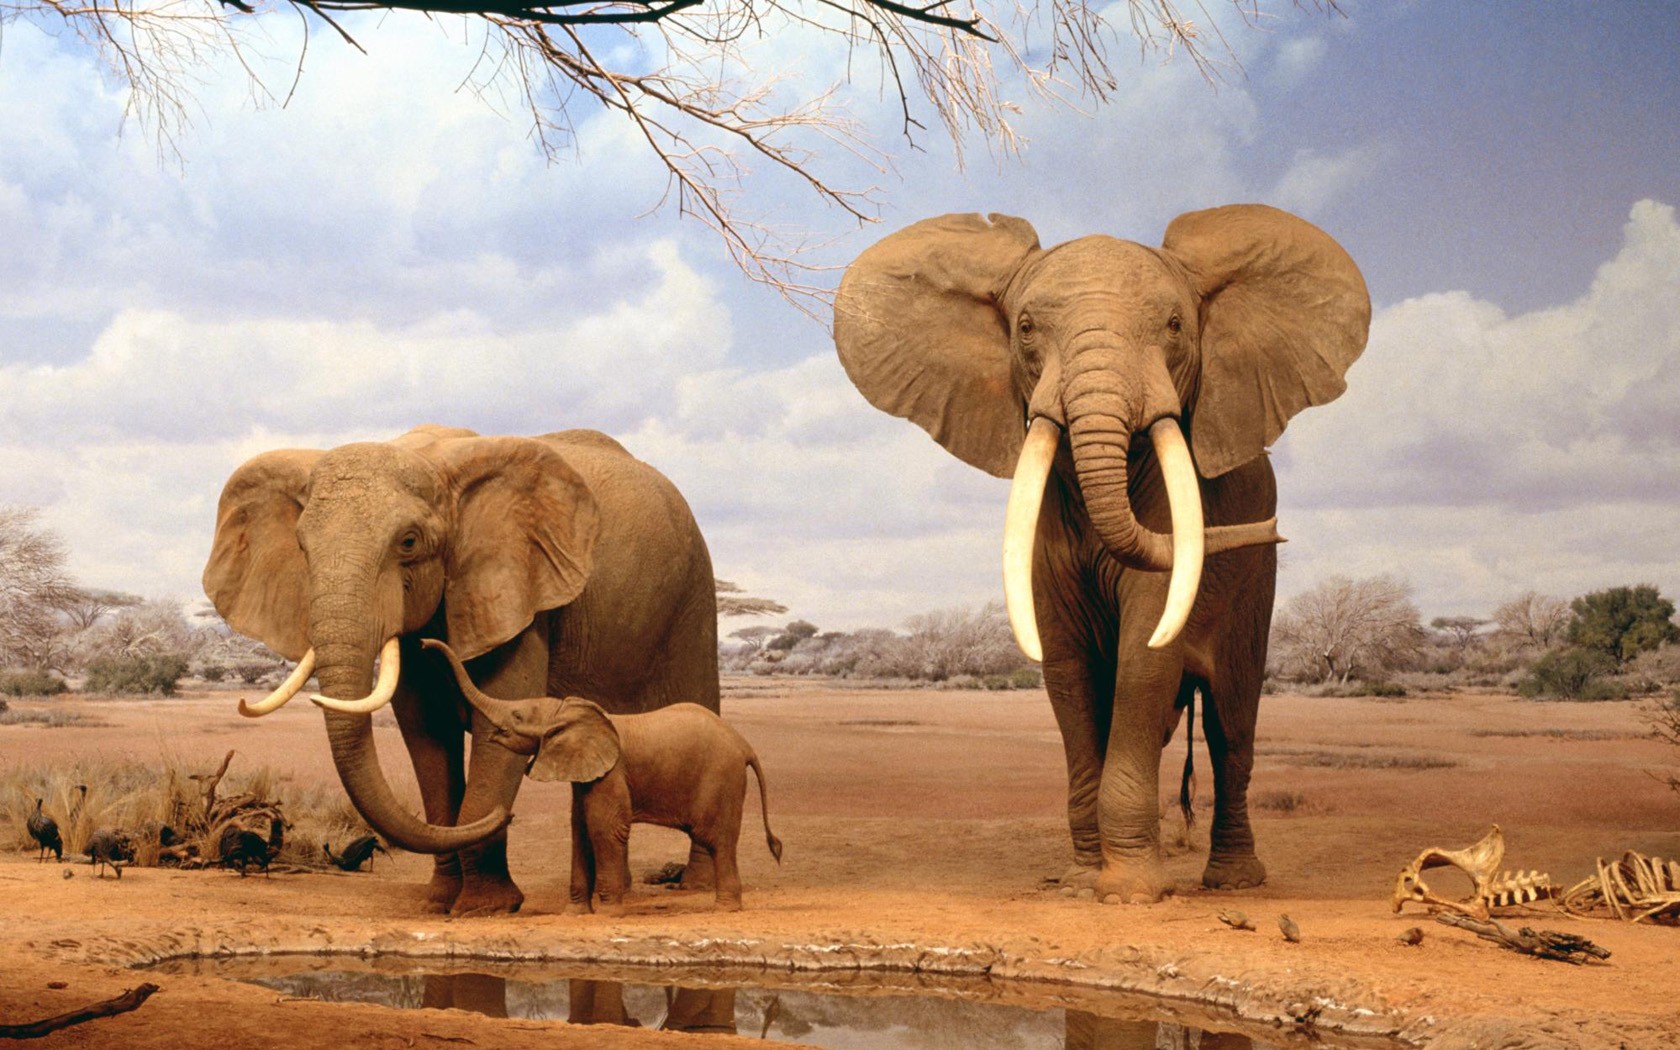  Elephants